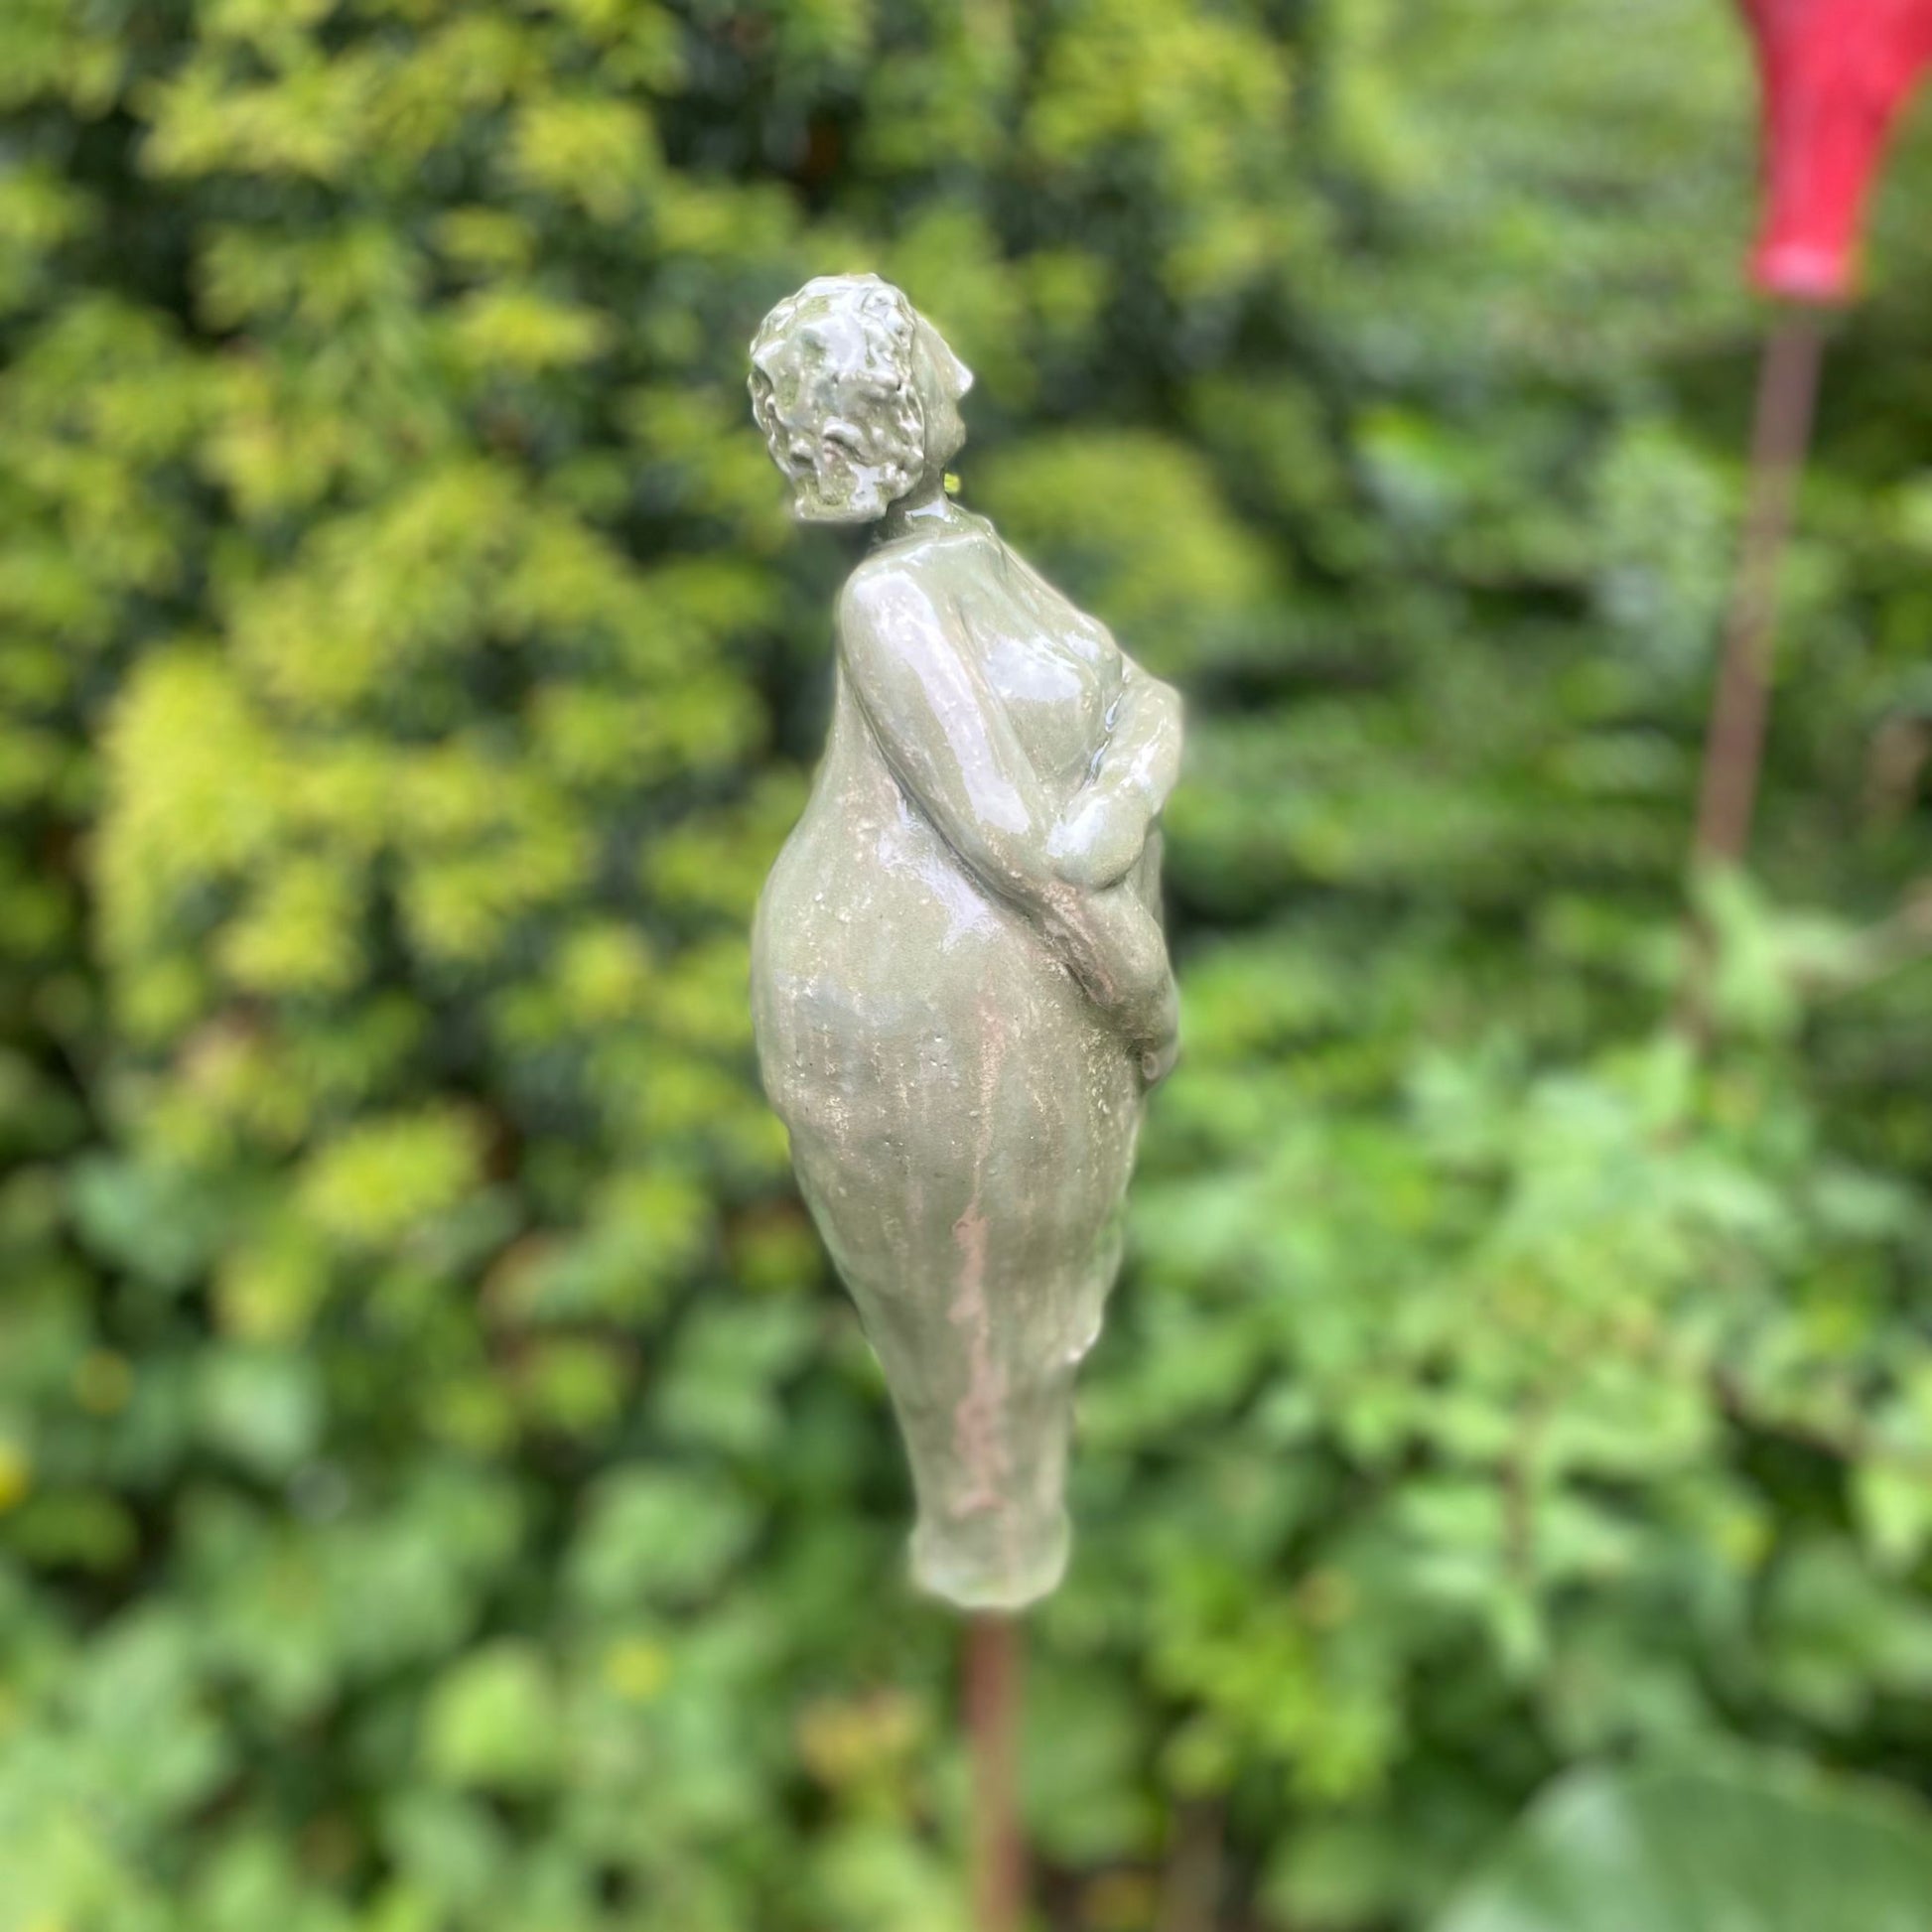 Keramikfigur, Gartenfigur, apfelgrün und glänzend glasiert. Serie "Lustige Weiber", Seitenansicht